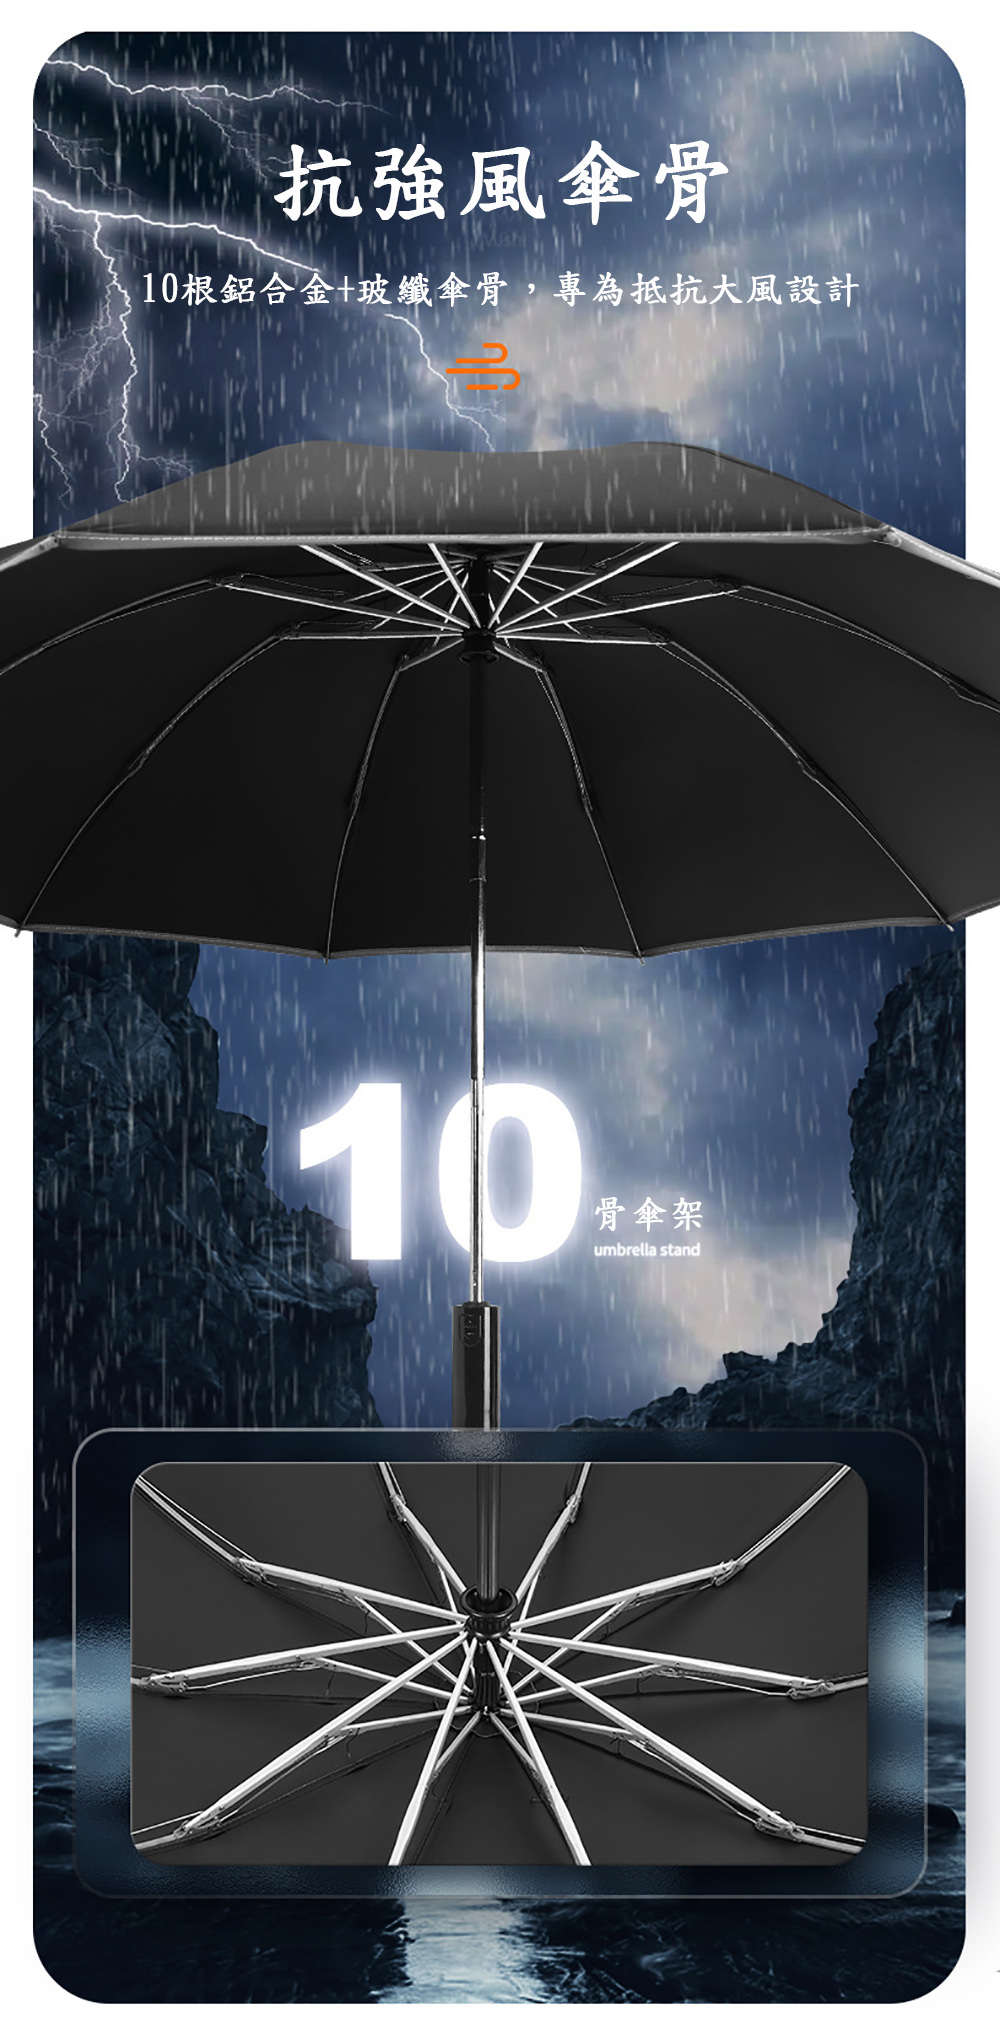 抗強風傘骨10根鋁合金+玻纖傘骨,專為抵抗大風設計10骨傘架umbrella stand